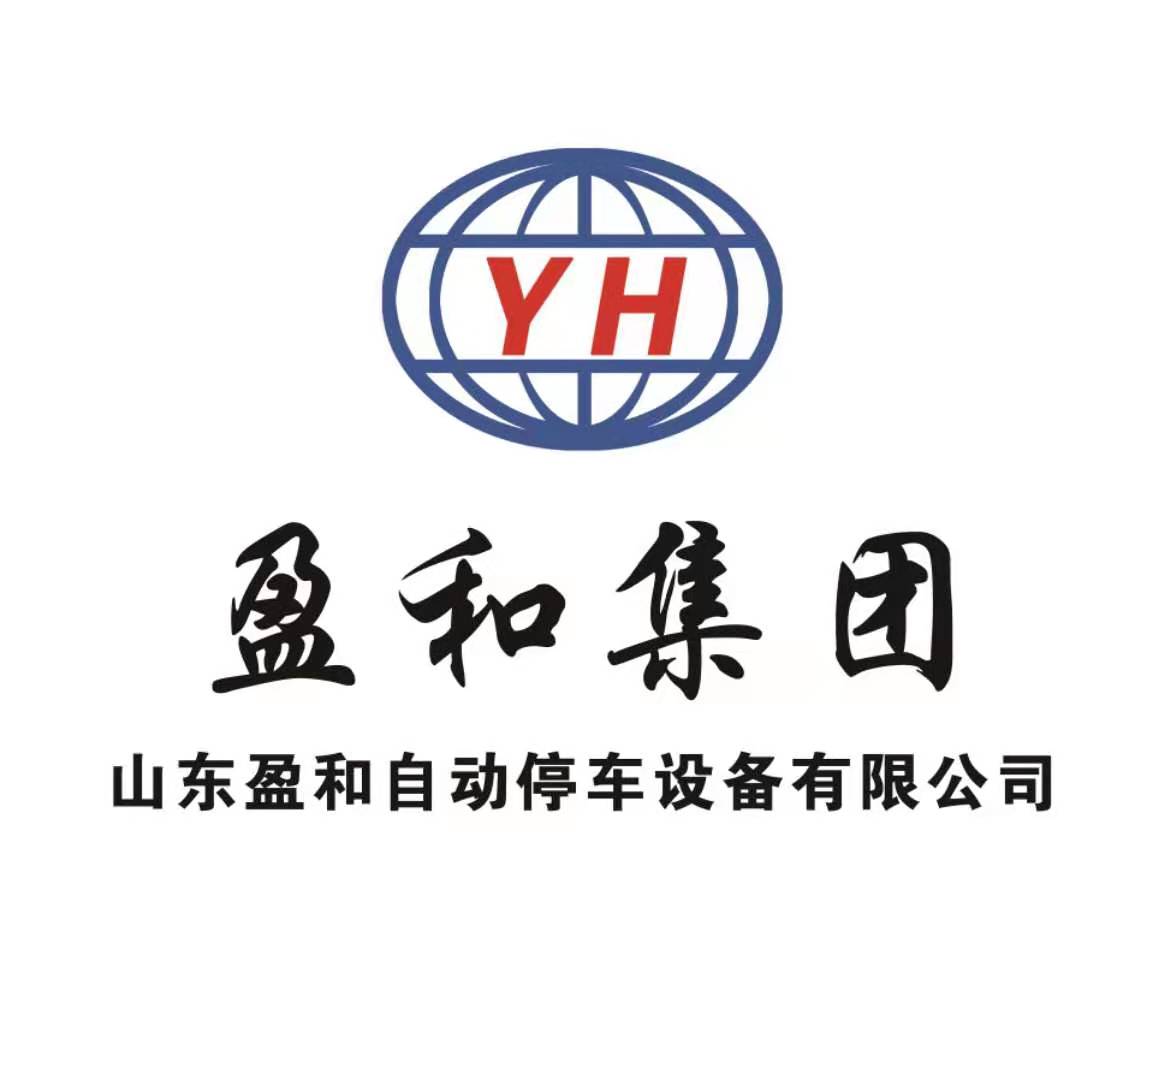 山东盈和自动停车设备有限公司上海分公司